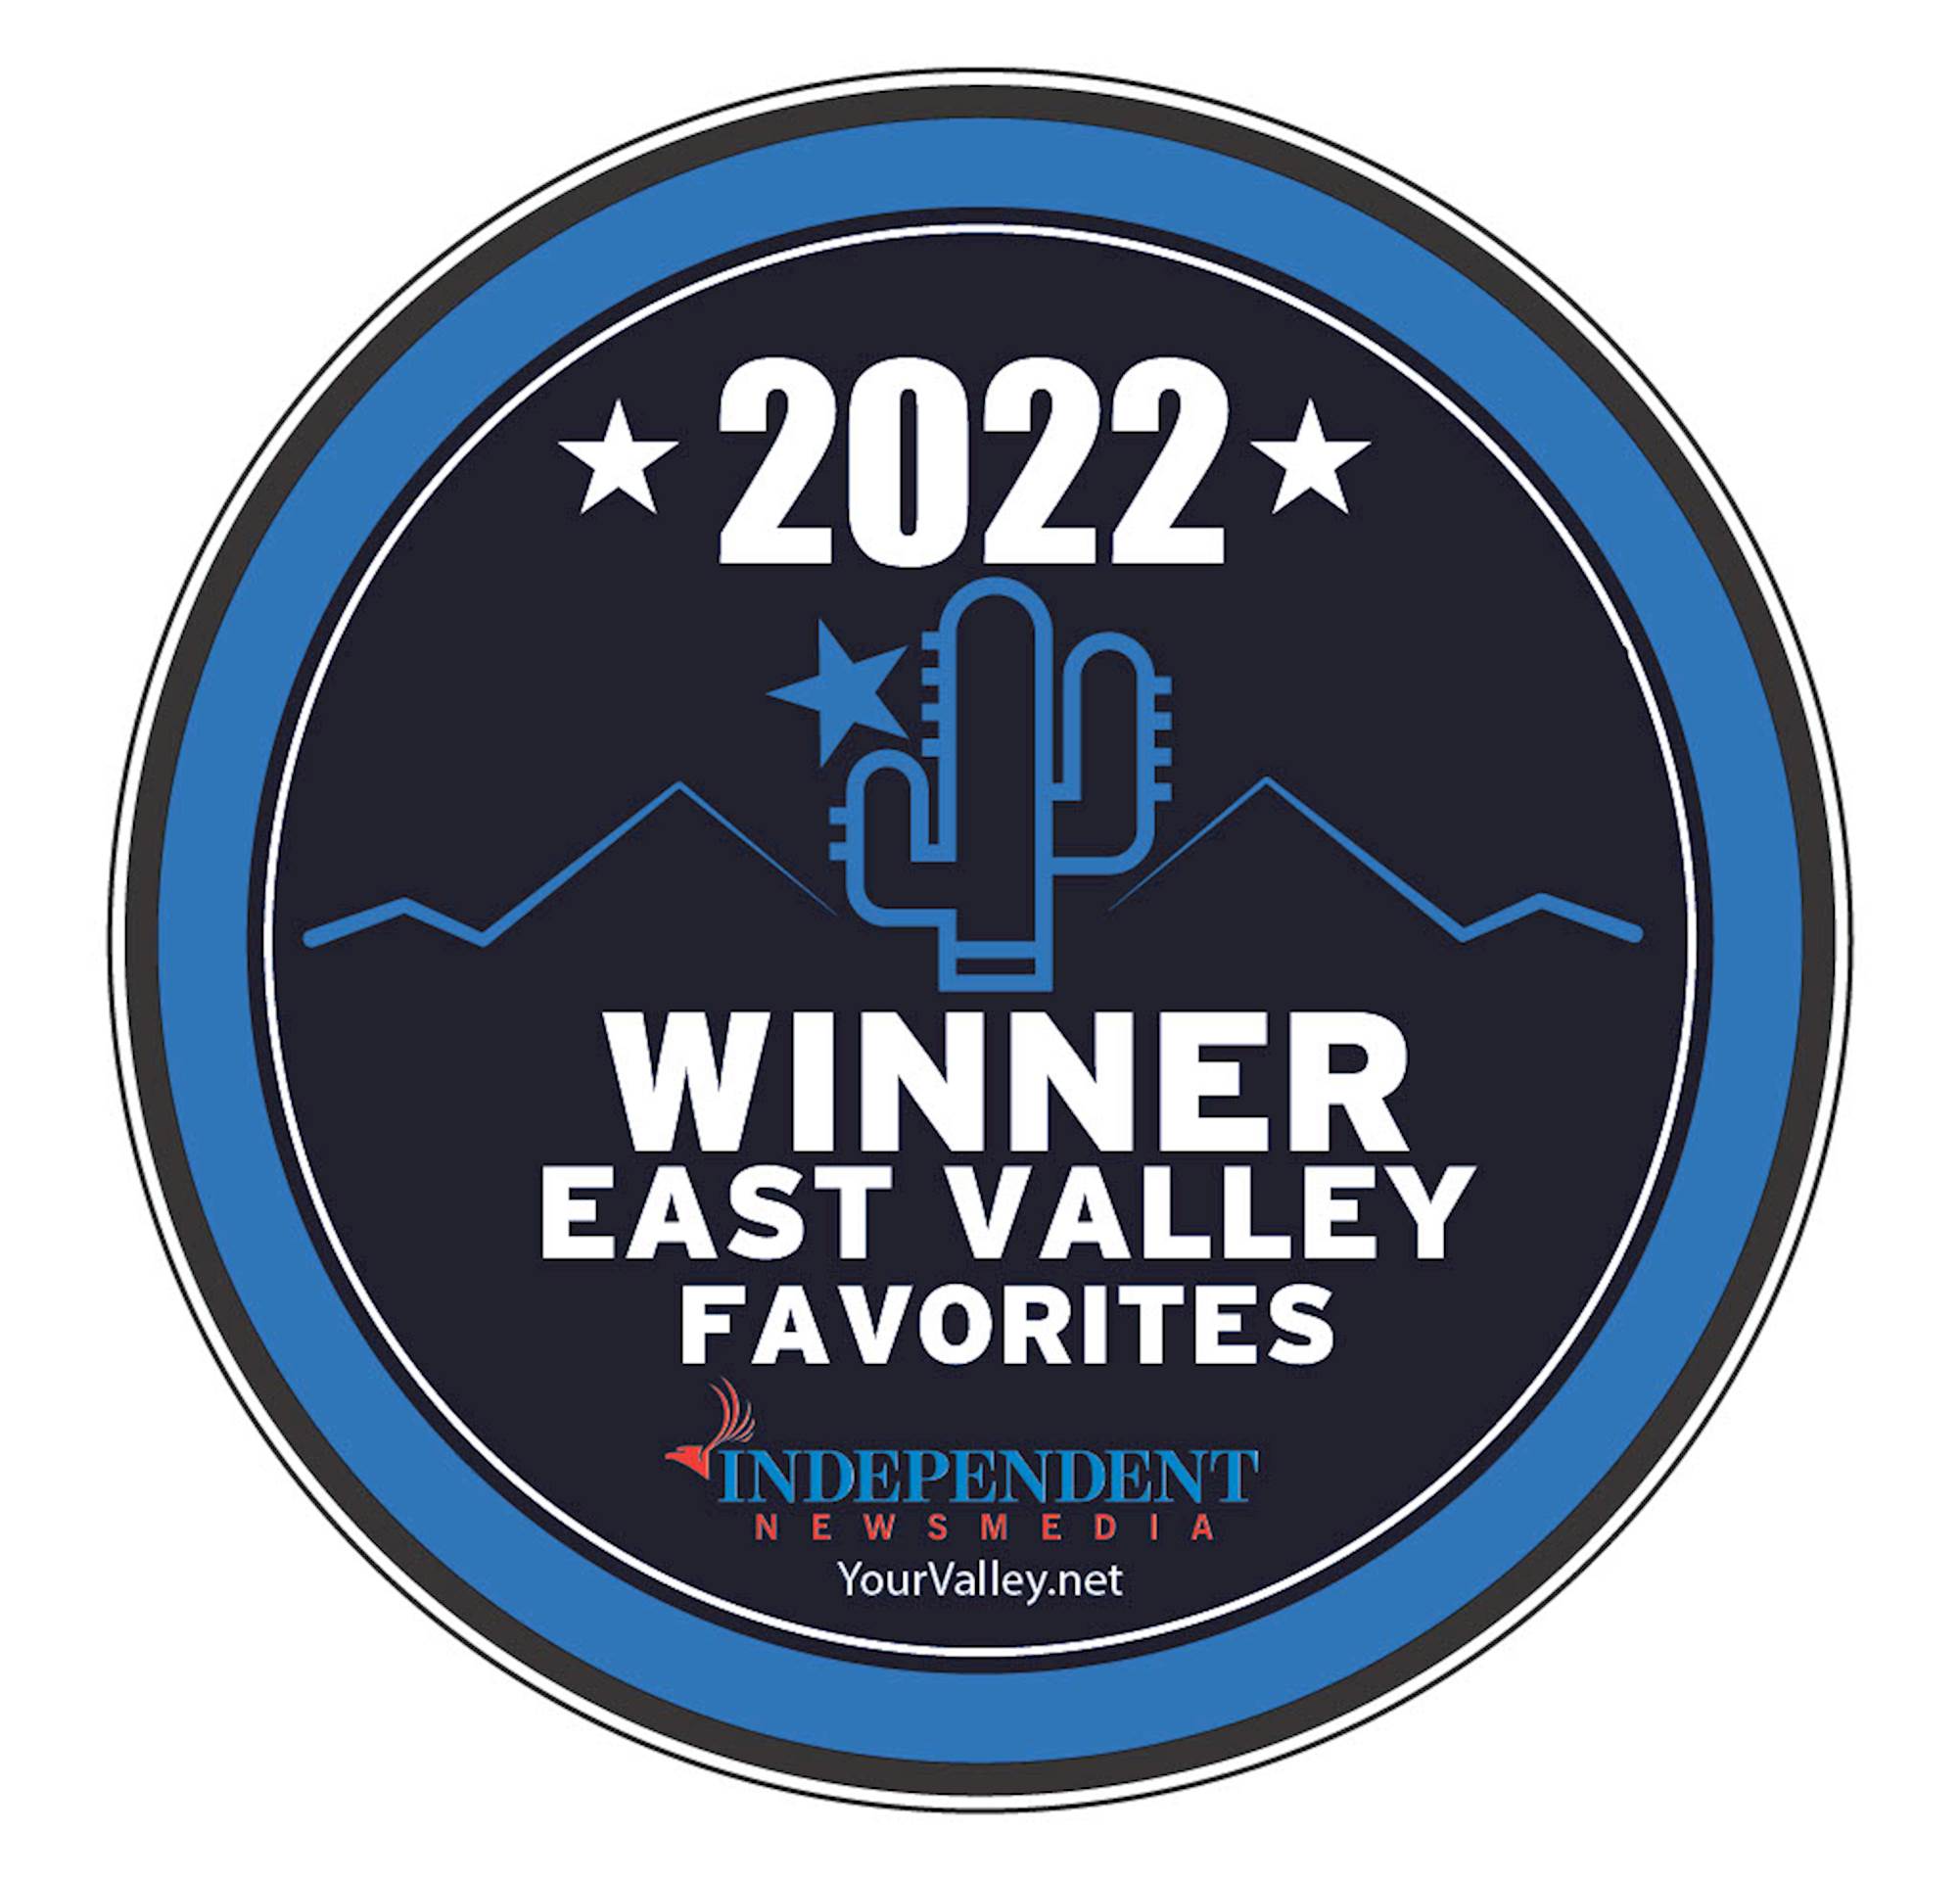 2022 East Valley Favorites Winner!